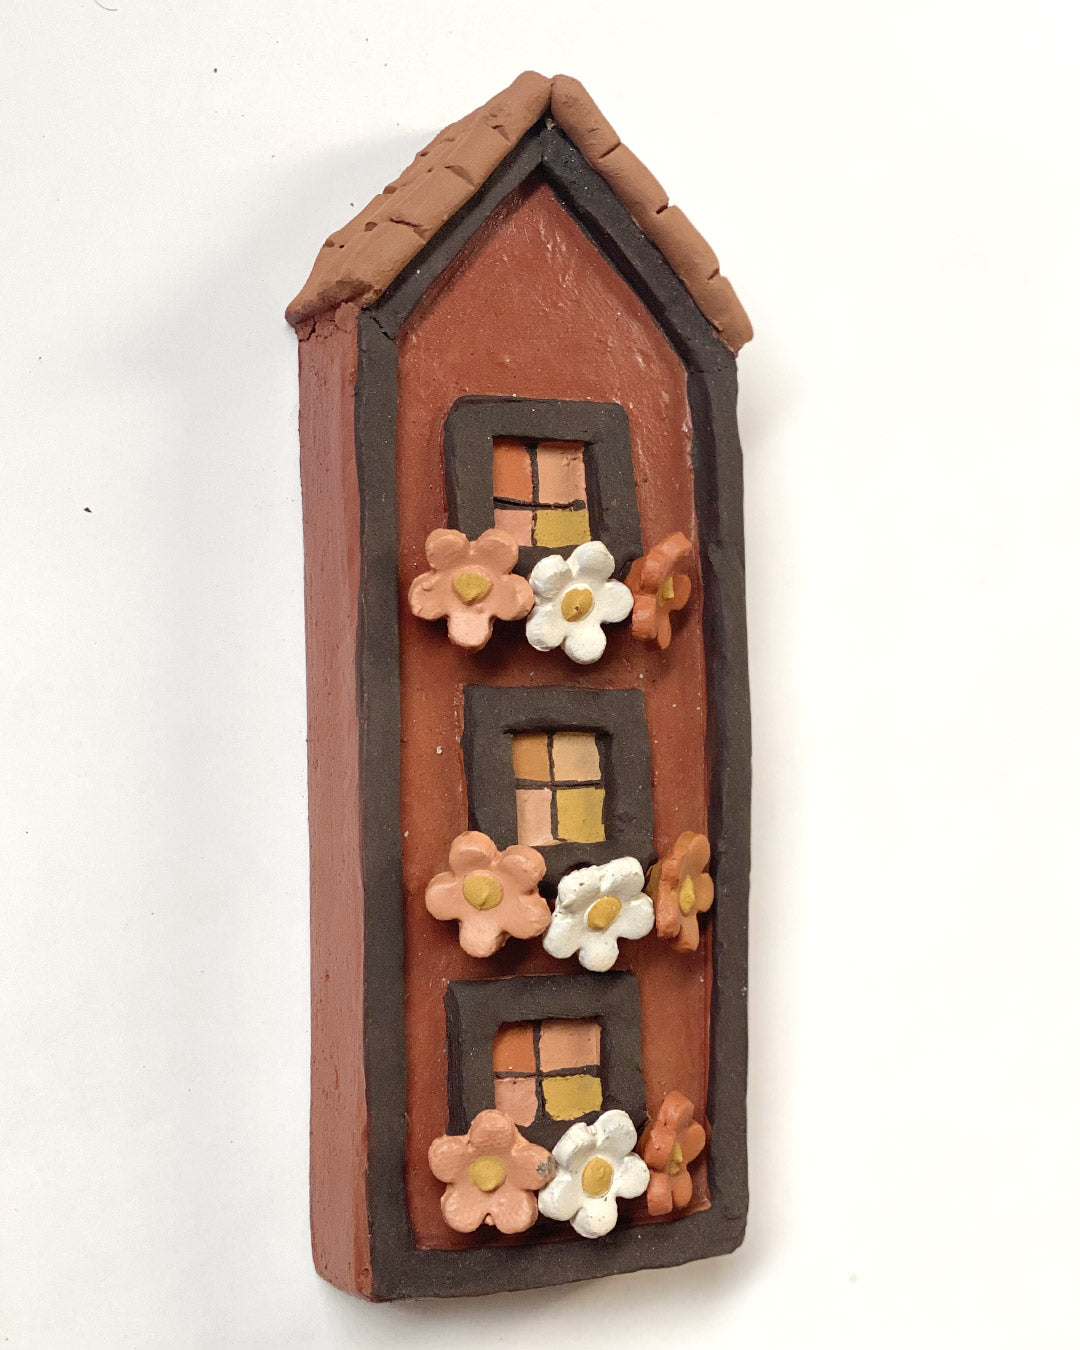 Casa marrom com flores coloridas nas jardineiras (parede)